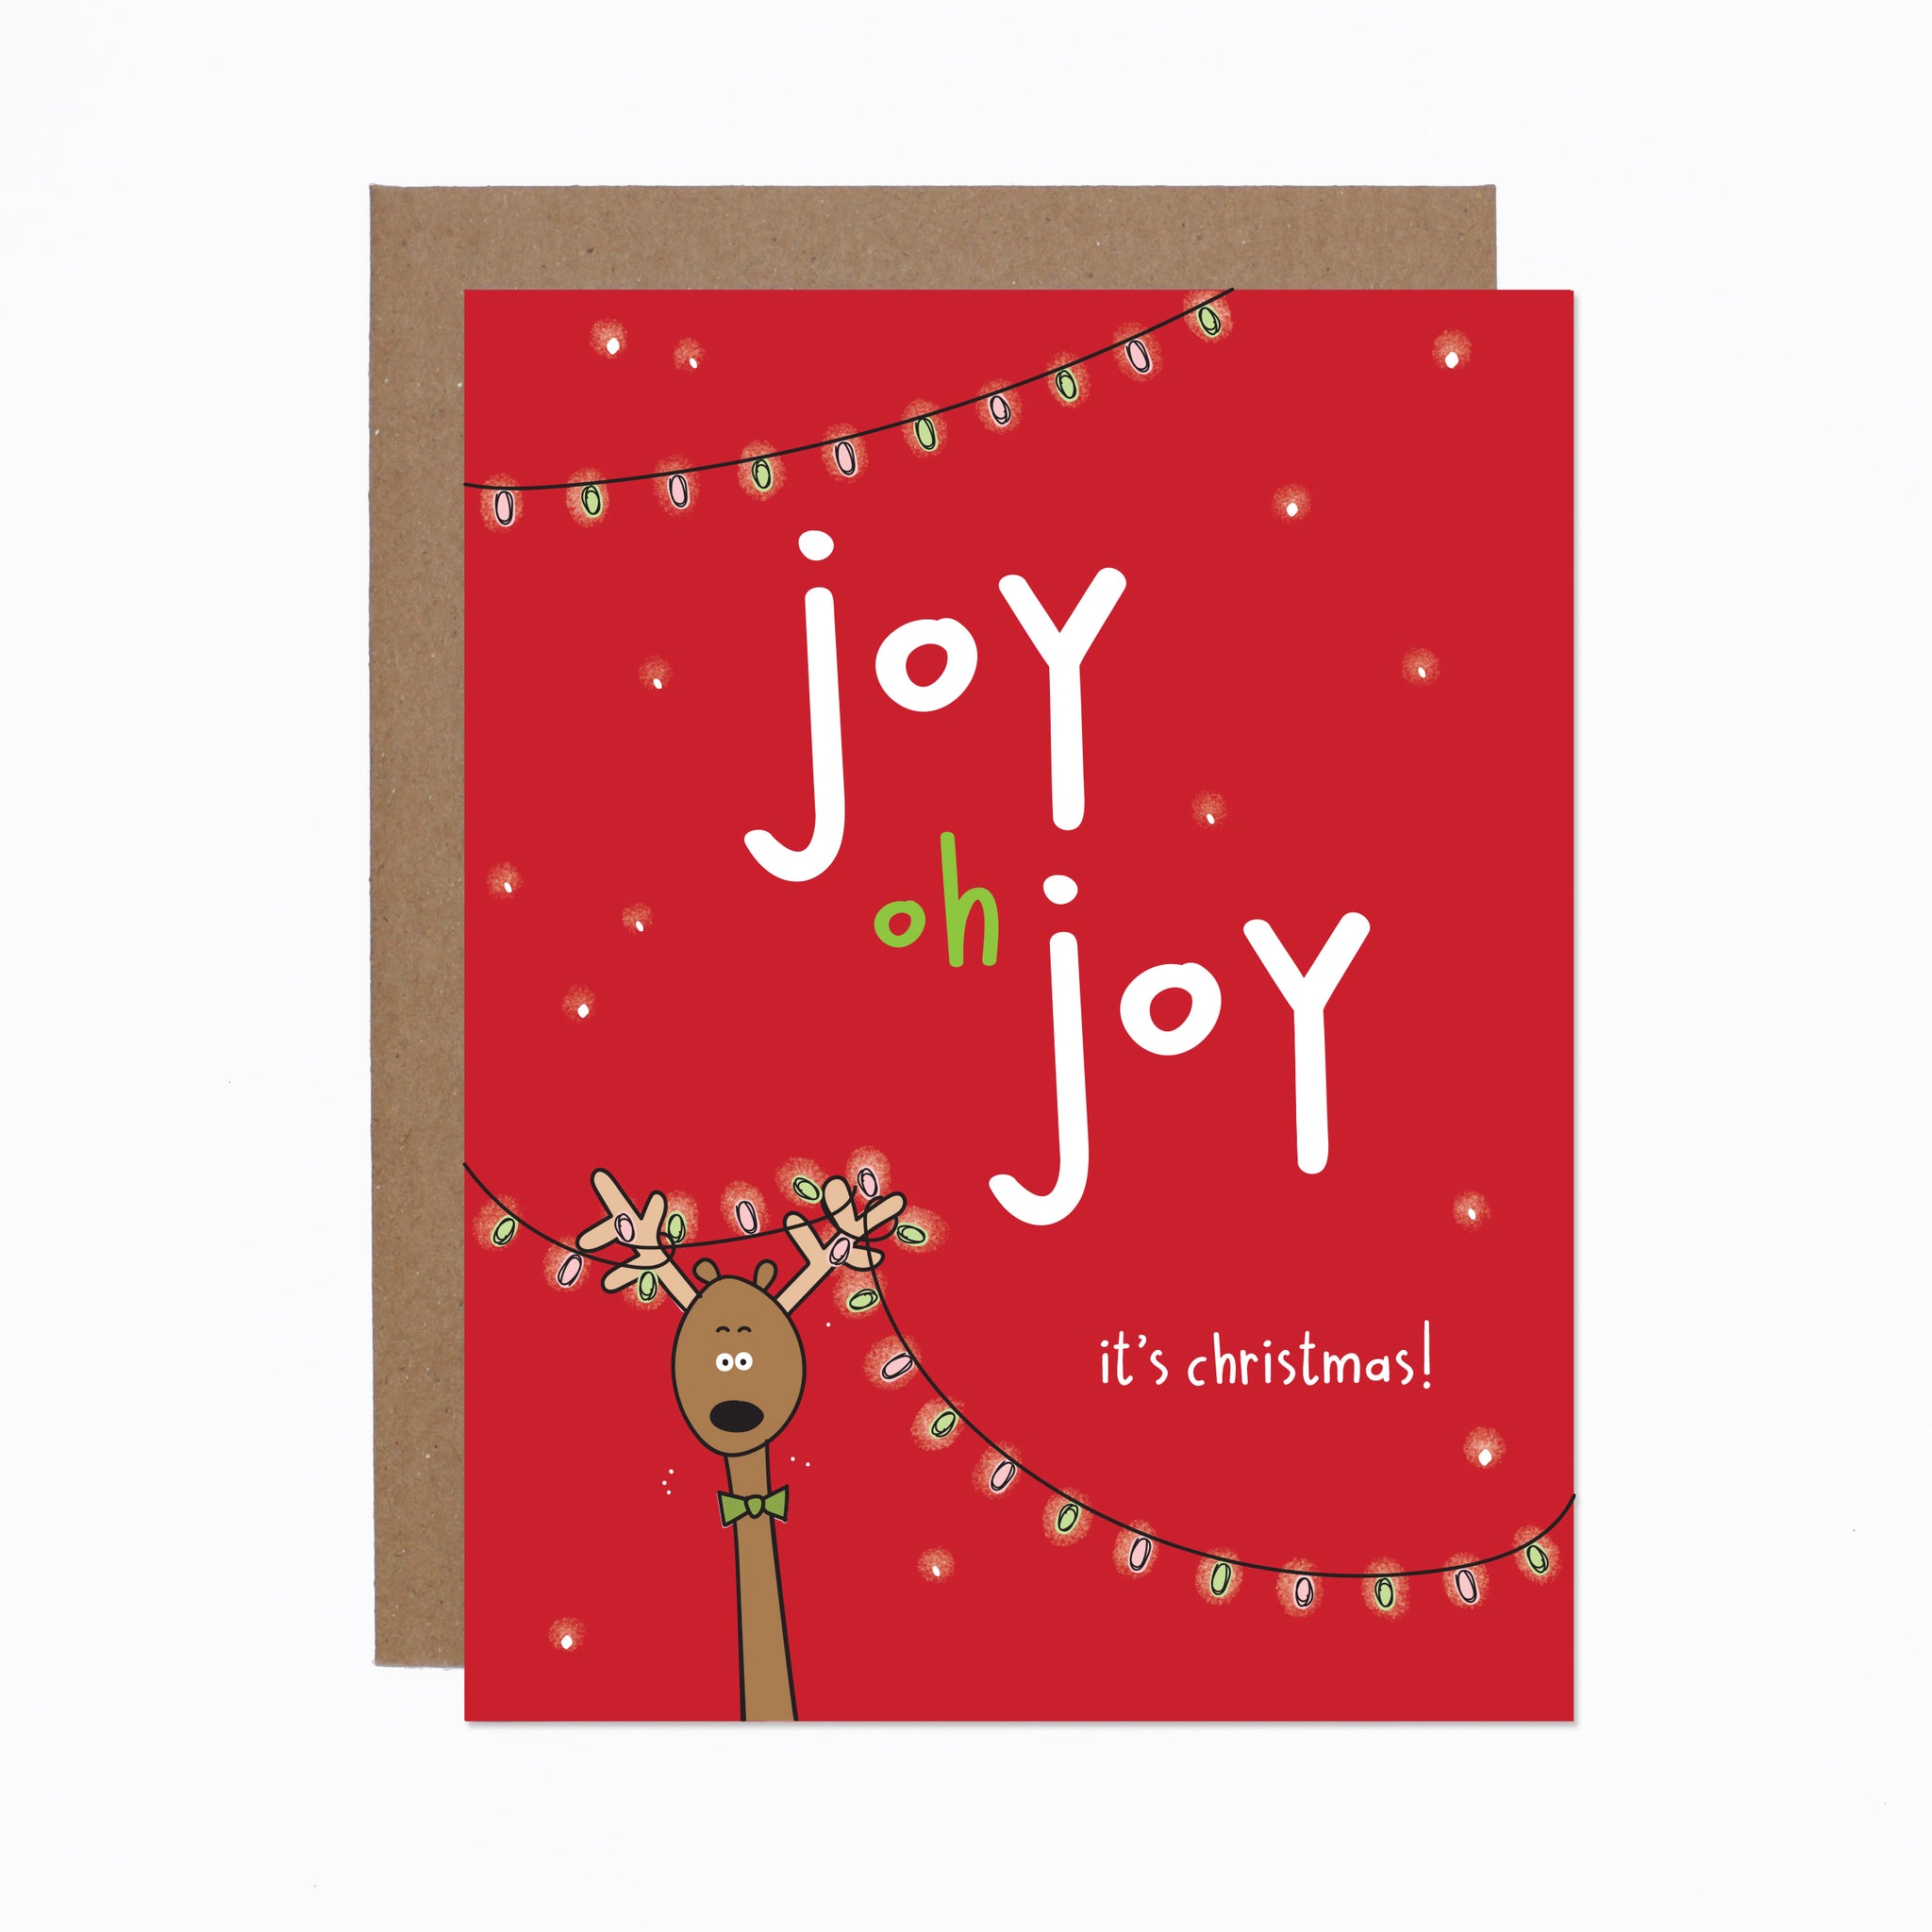 Joy Oh Joy Holiday card